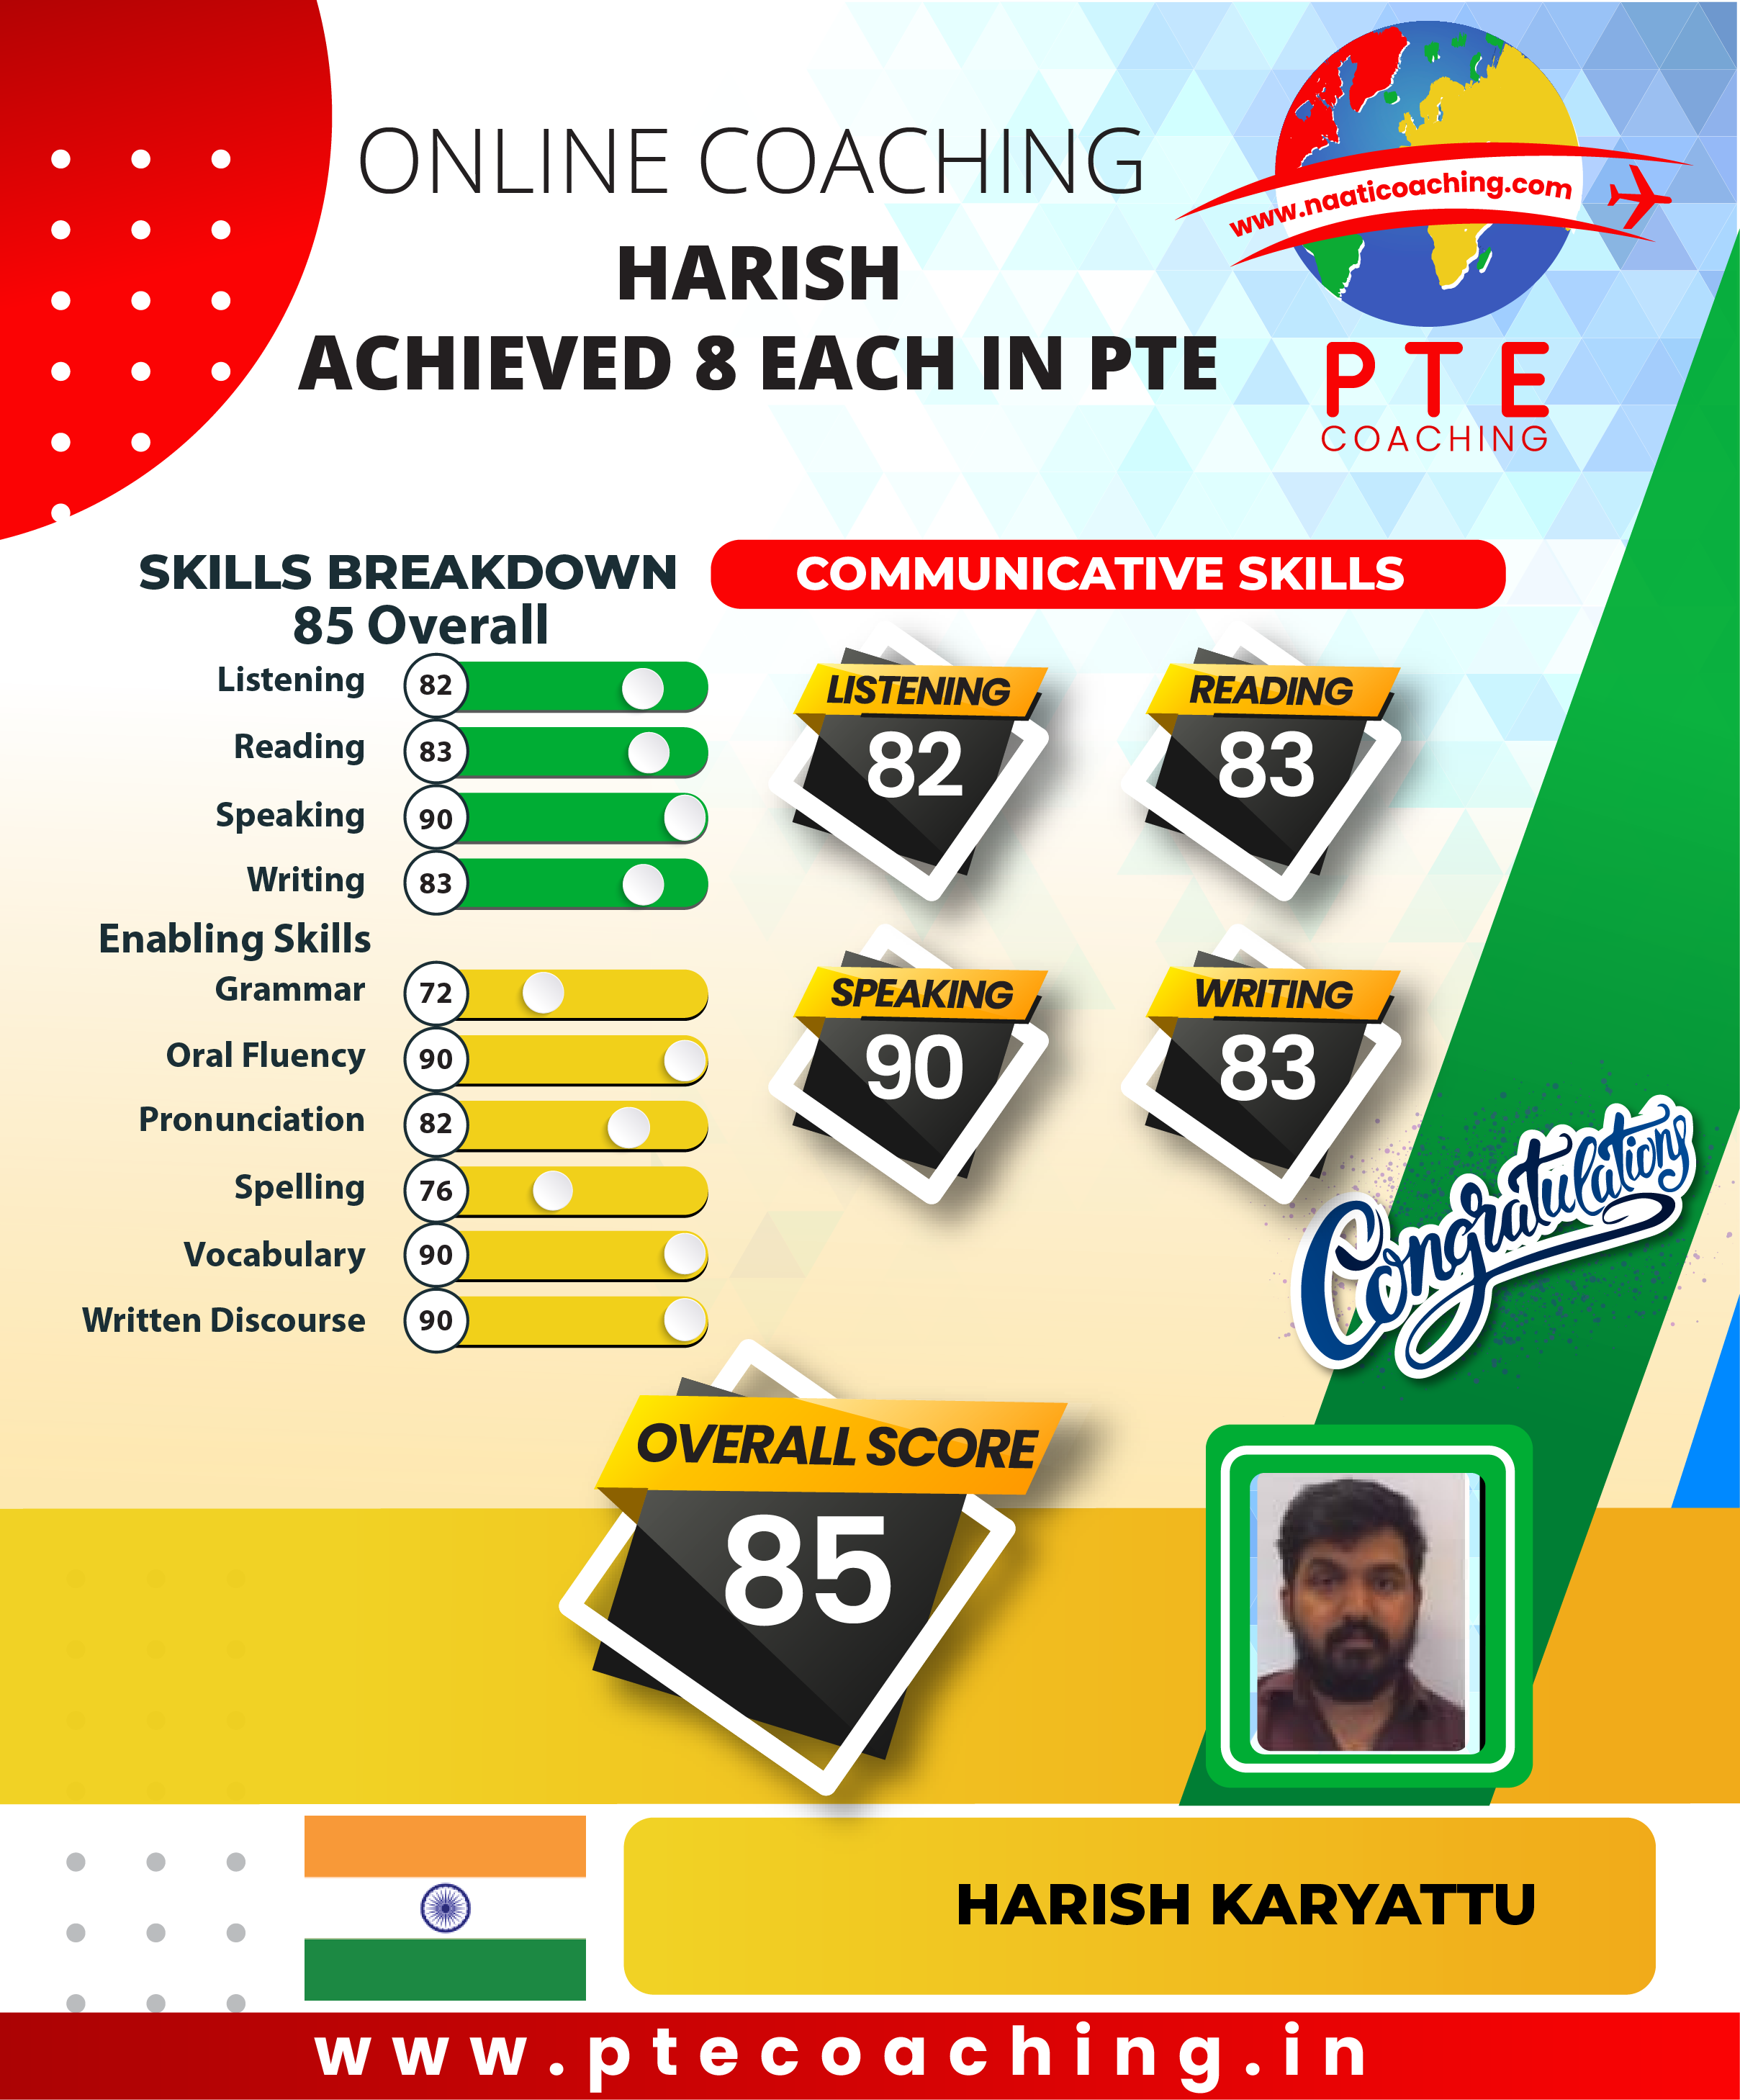 PTE Coaching Scorecard - Harish achieved 8 each in PTE